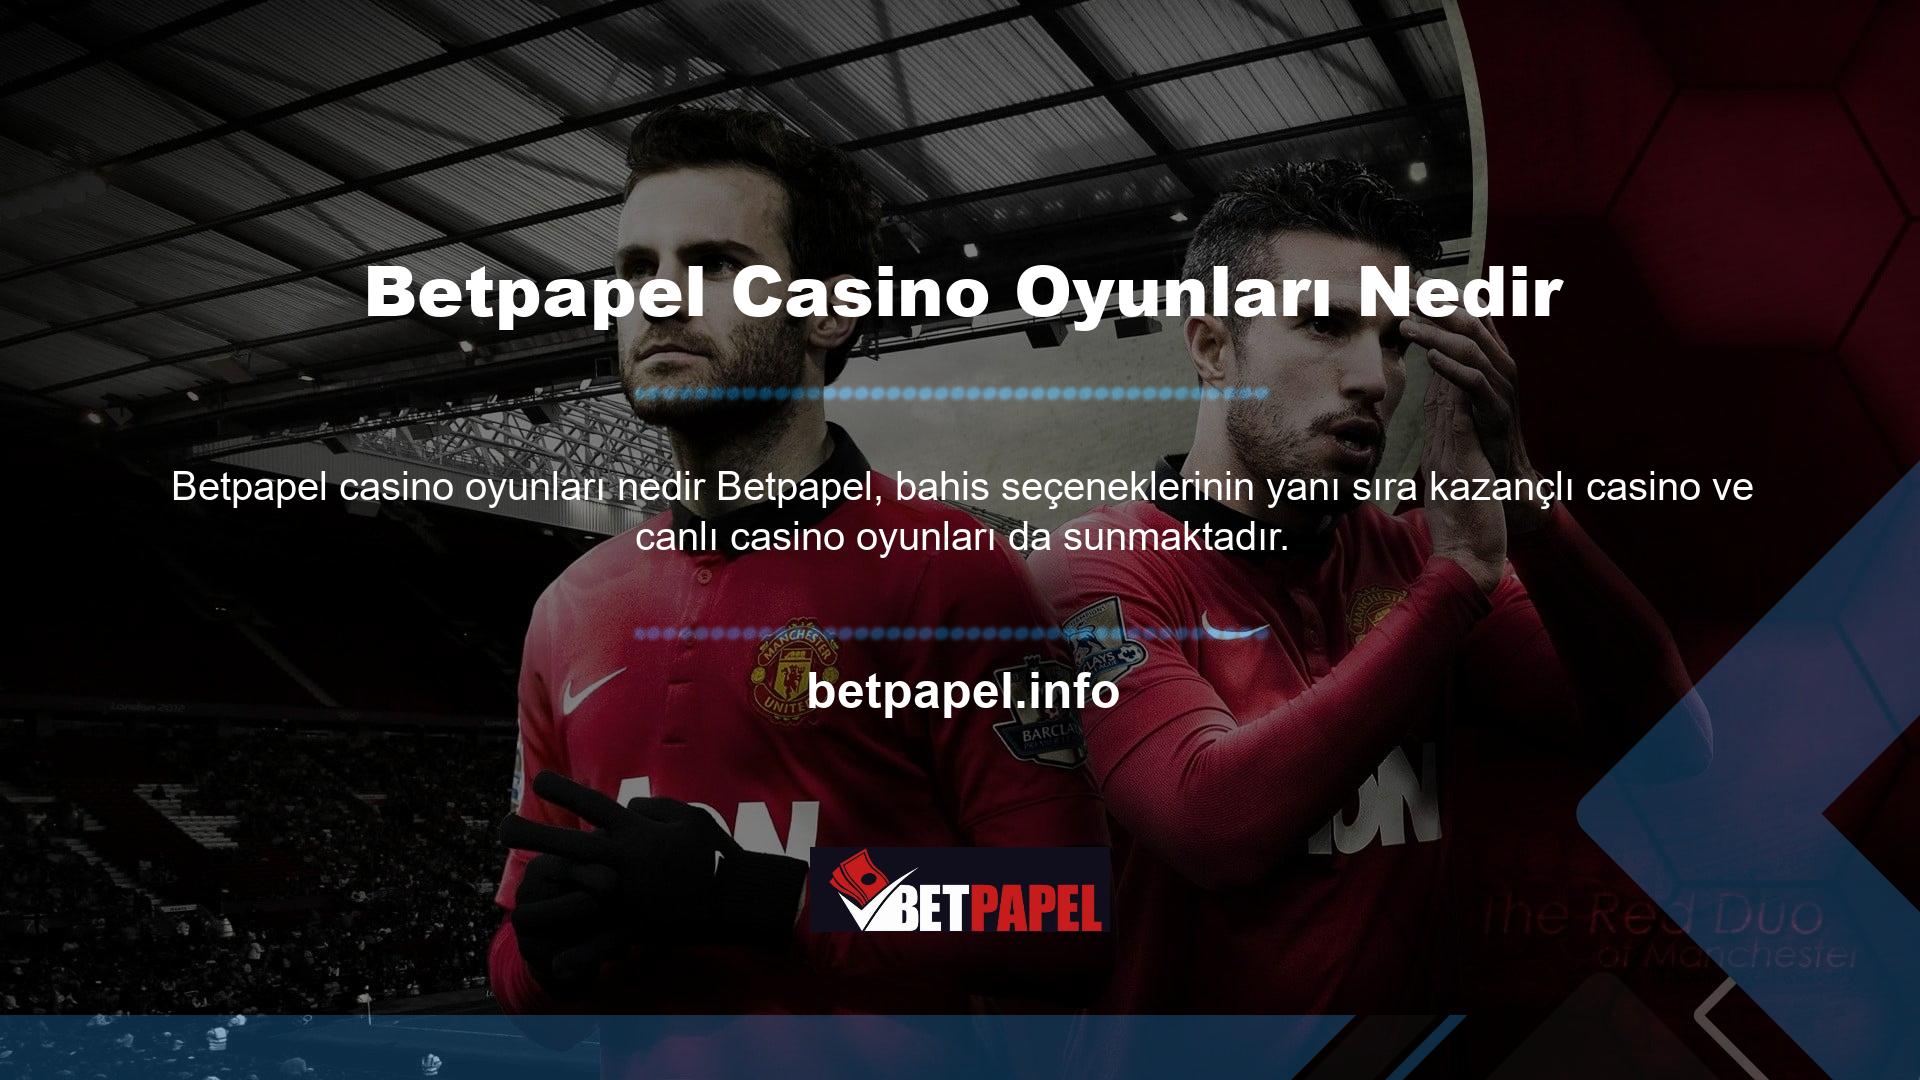 Betpapel canlı casino oyunları bölümü, kullanıcıların ve oyuncuların ilgilendiği tüm popüler oyun seçeneklerini içerir